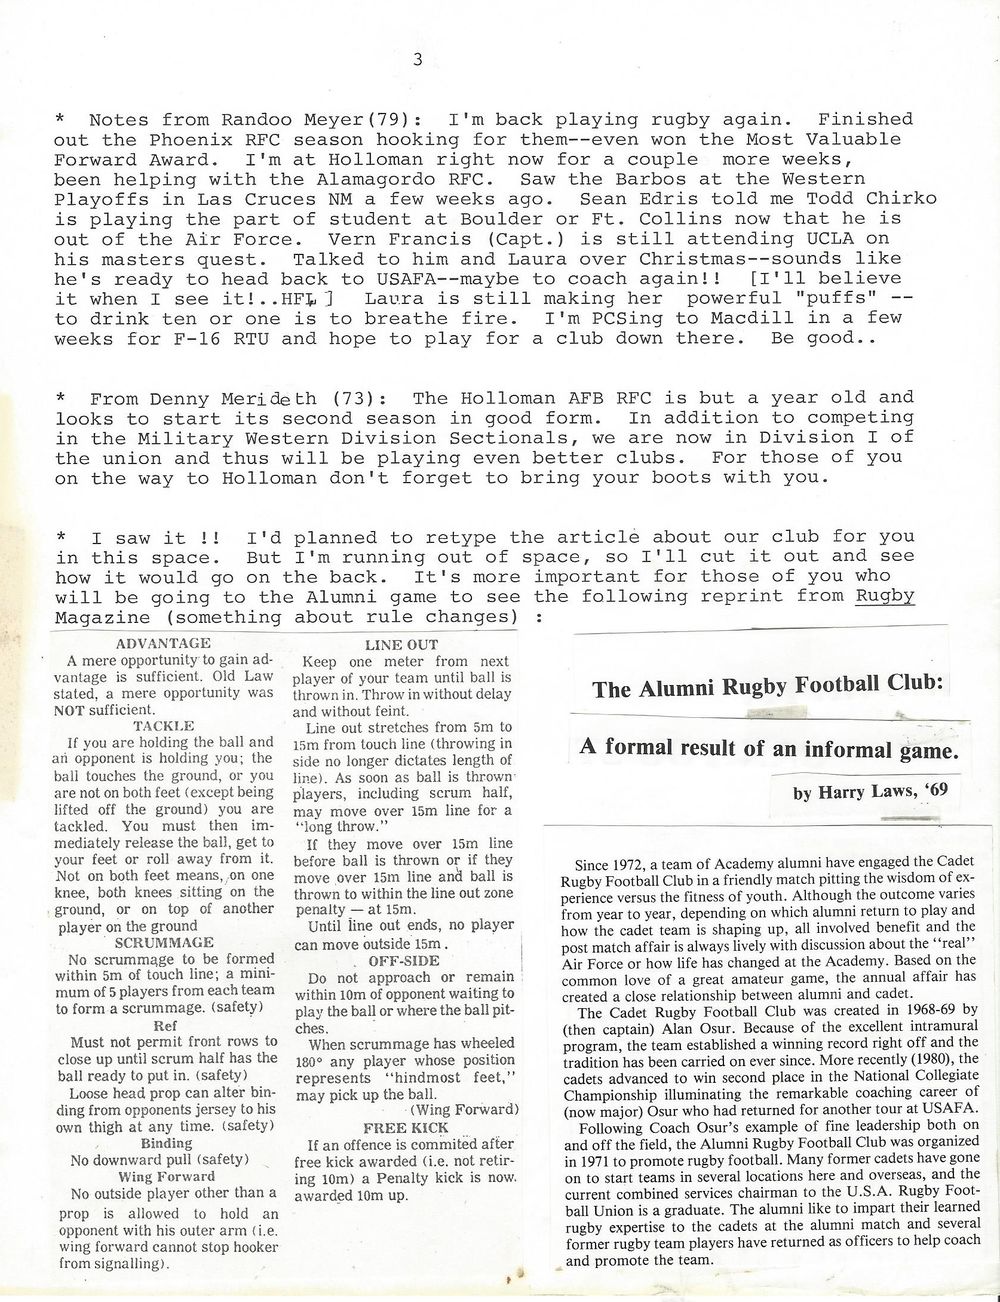 1982 09c newsletter.jpg